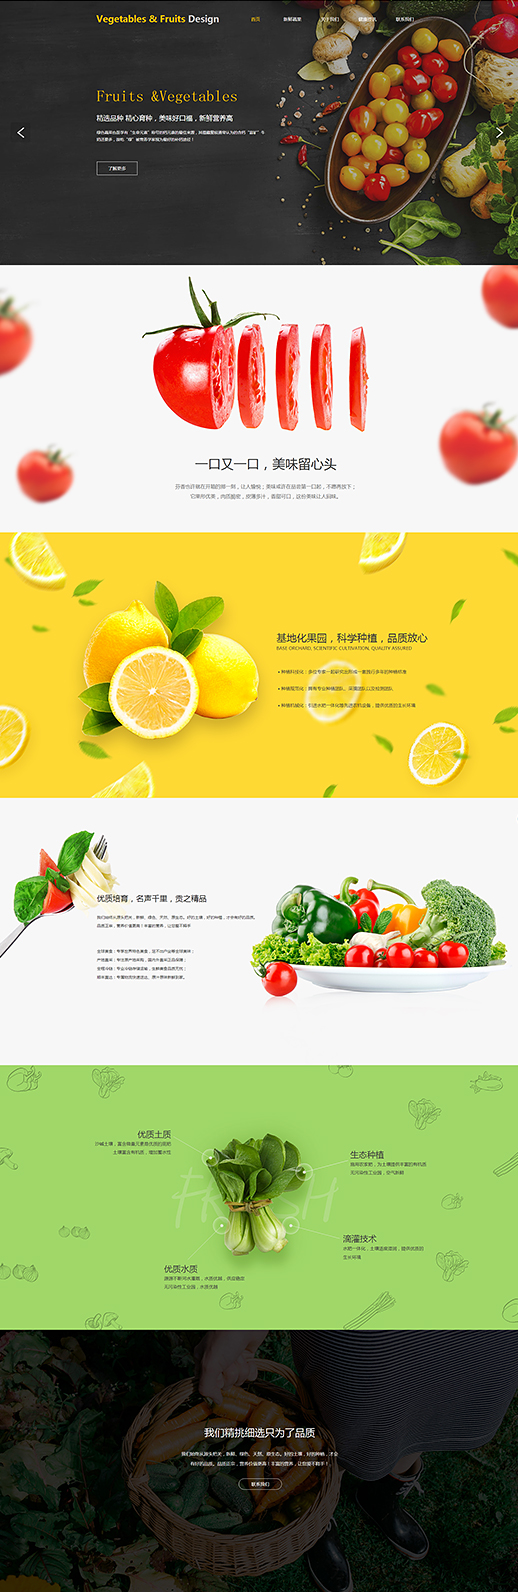 原创生鲜水果网站模板